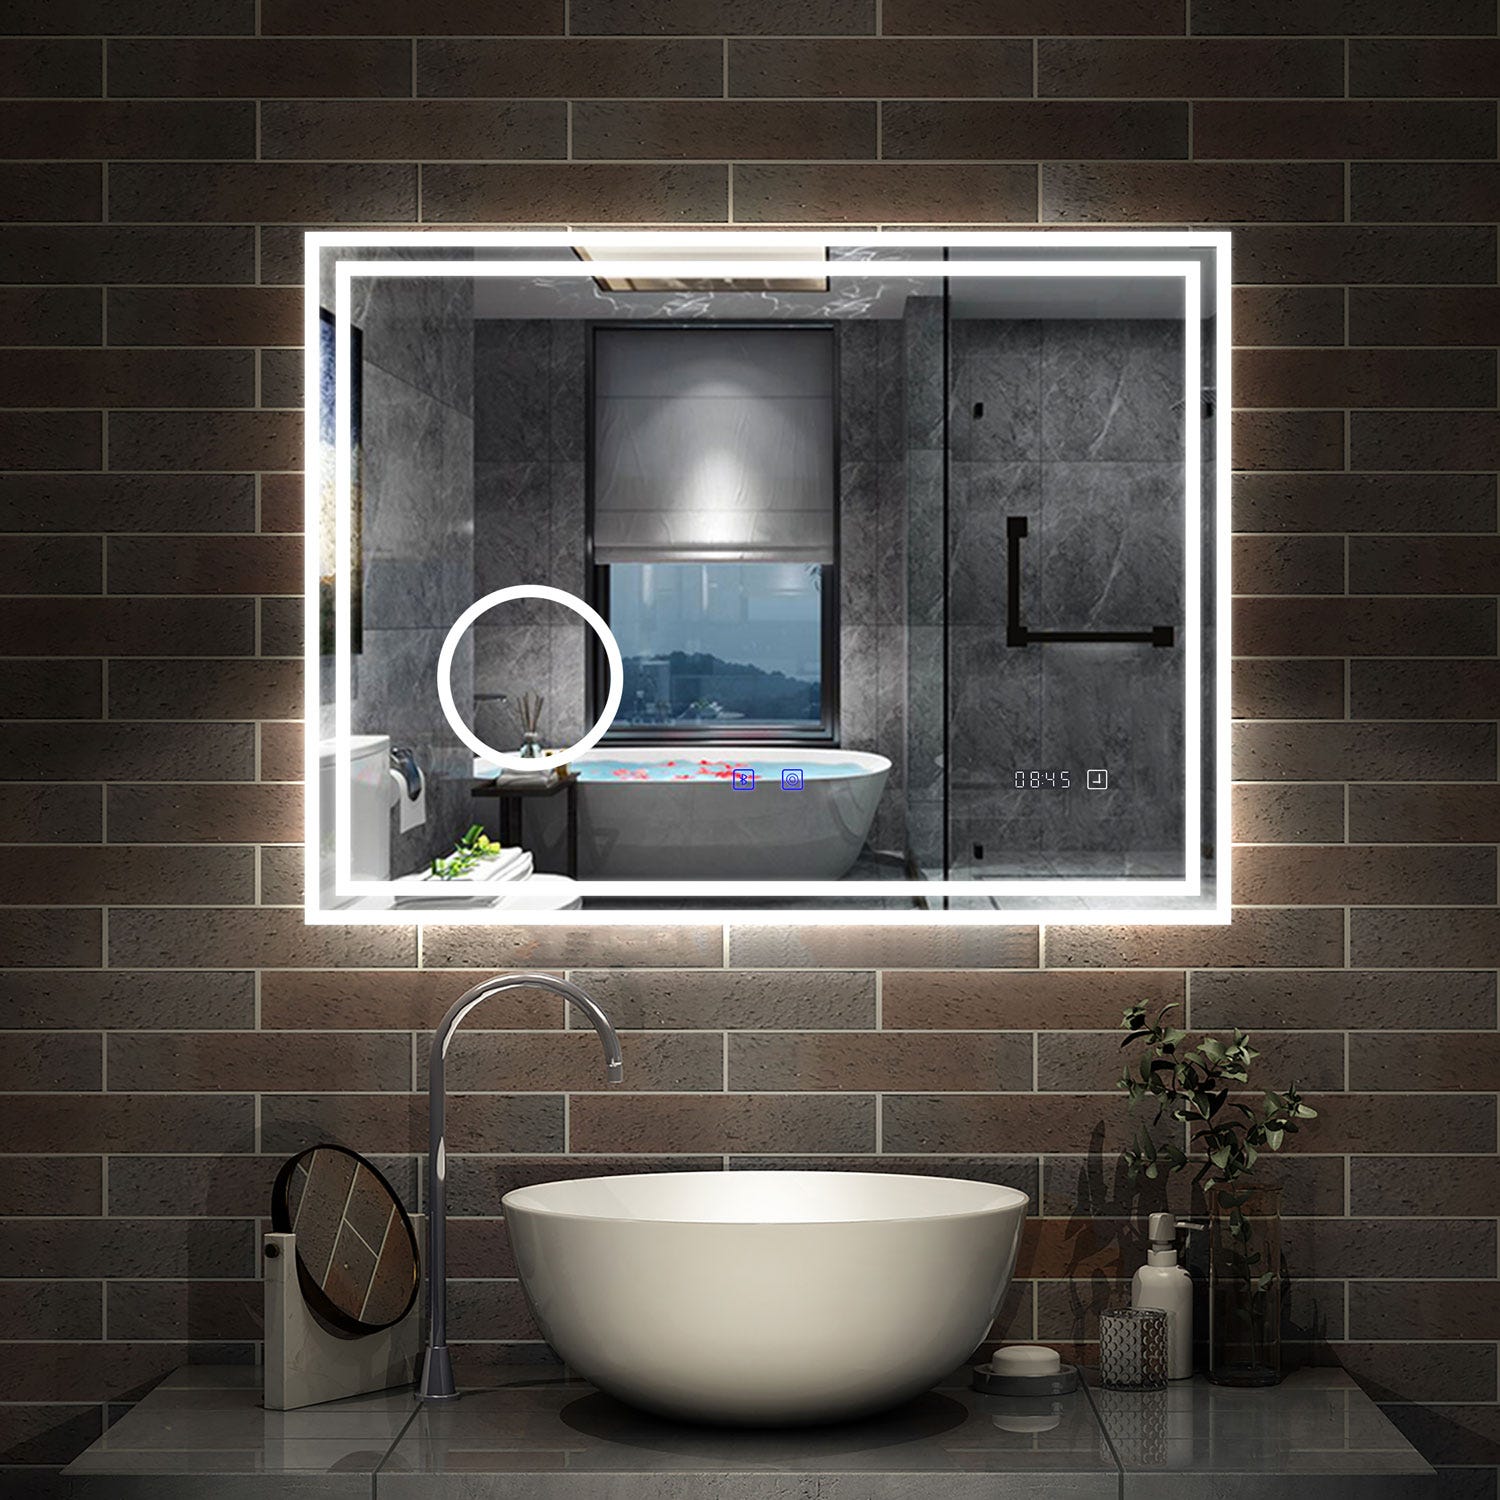 AICA LED miroir 80x60cm horloge + bluetooth + miroir grossissant + tricolore + tactile + anti-buée, suspendu horizontalement ,miroir salle de bain 0